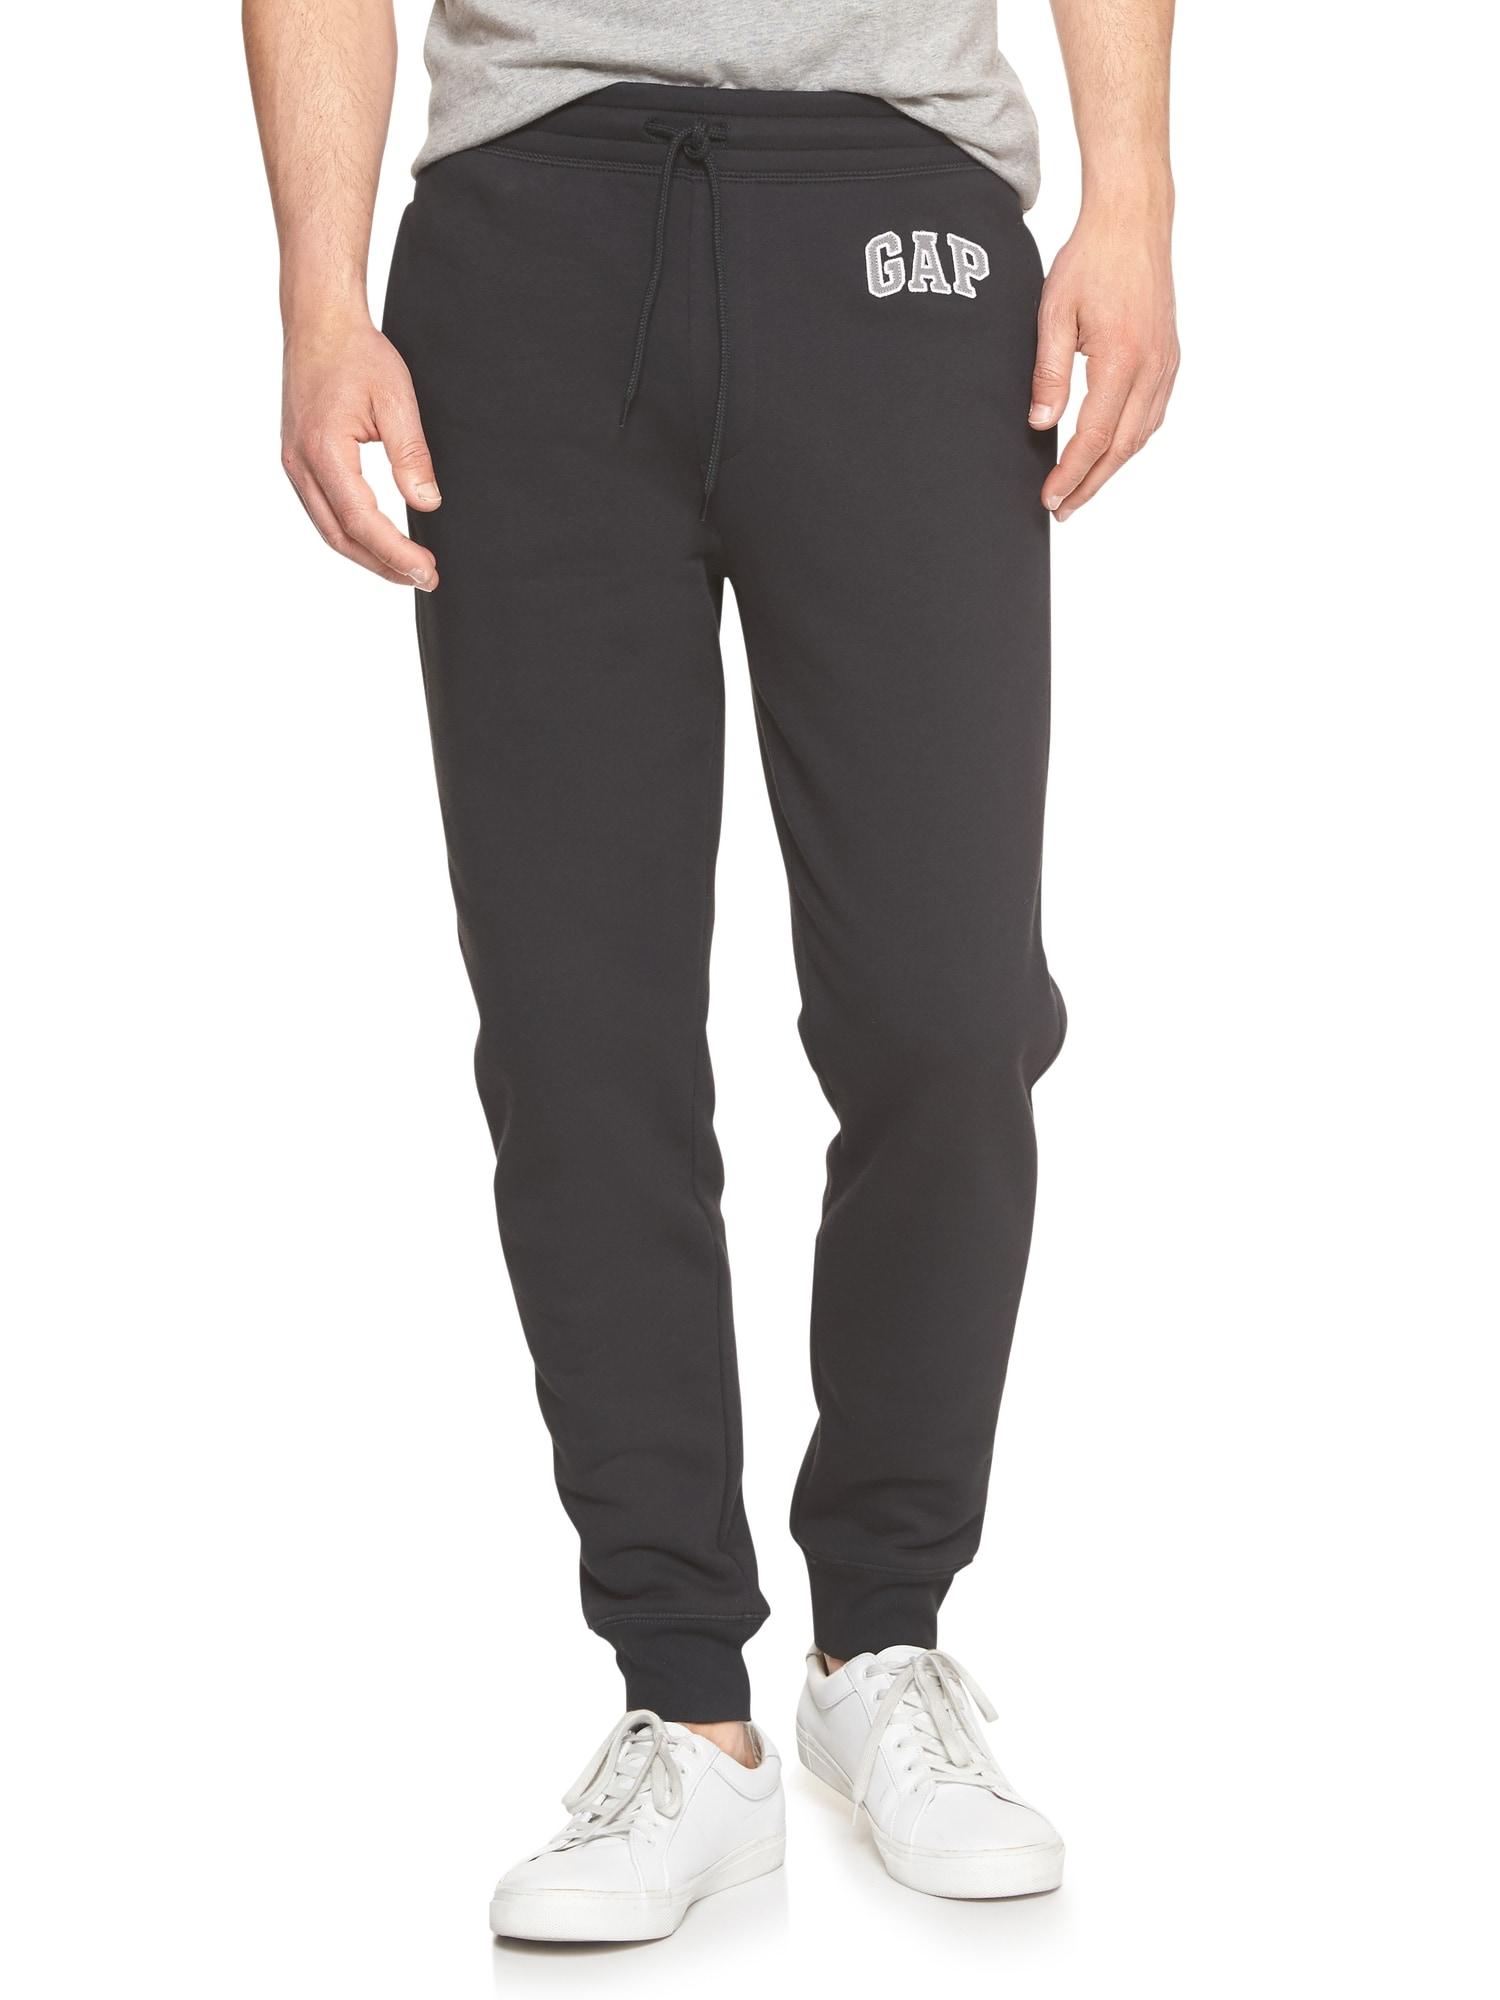 GAP Factory Gap Logo Fleece Pants in Black for Men - Lyst